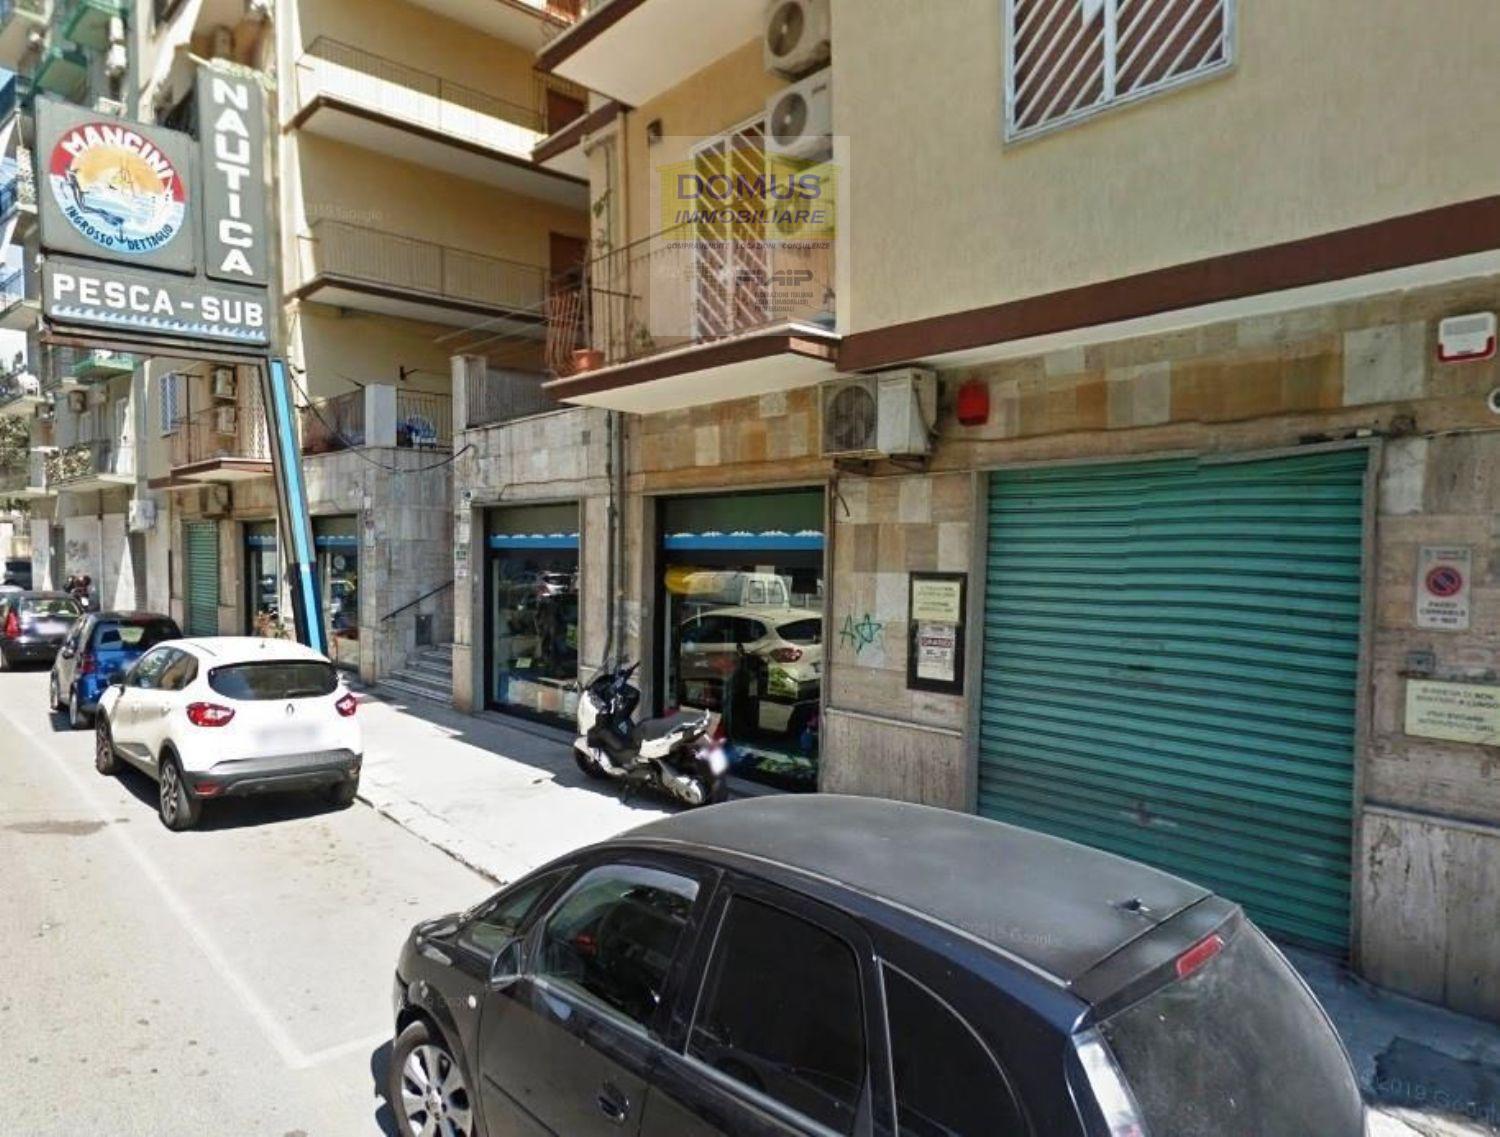 Immobile Commerciale in vendita a Taranto, 2 locali, prezzo € 465.000 | CambioCasa.it